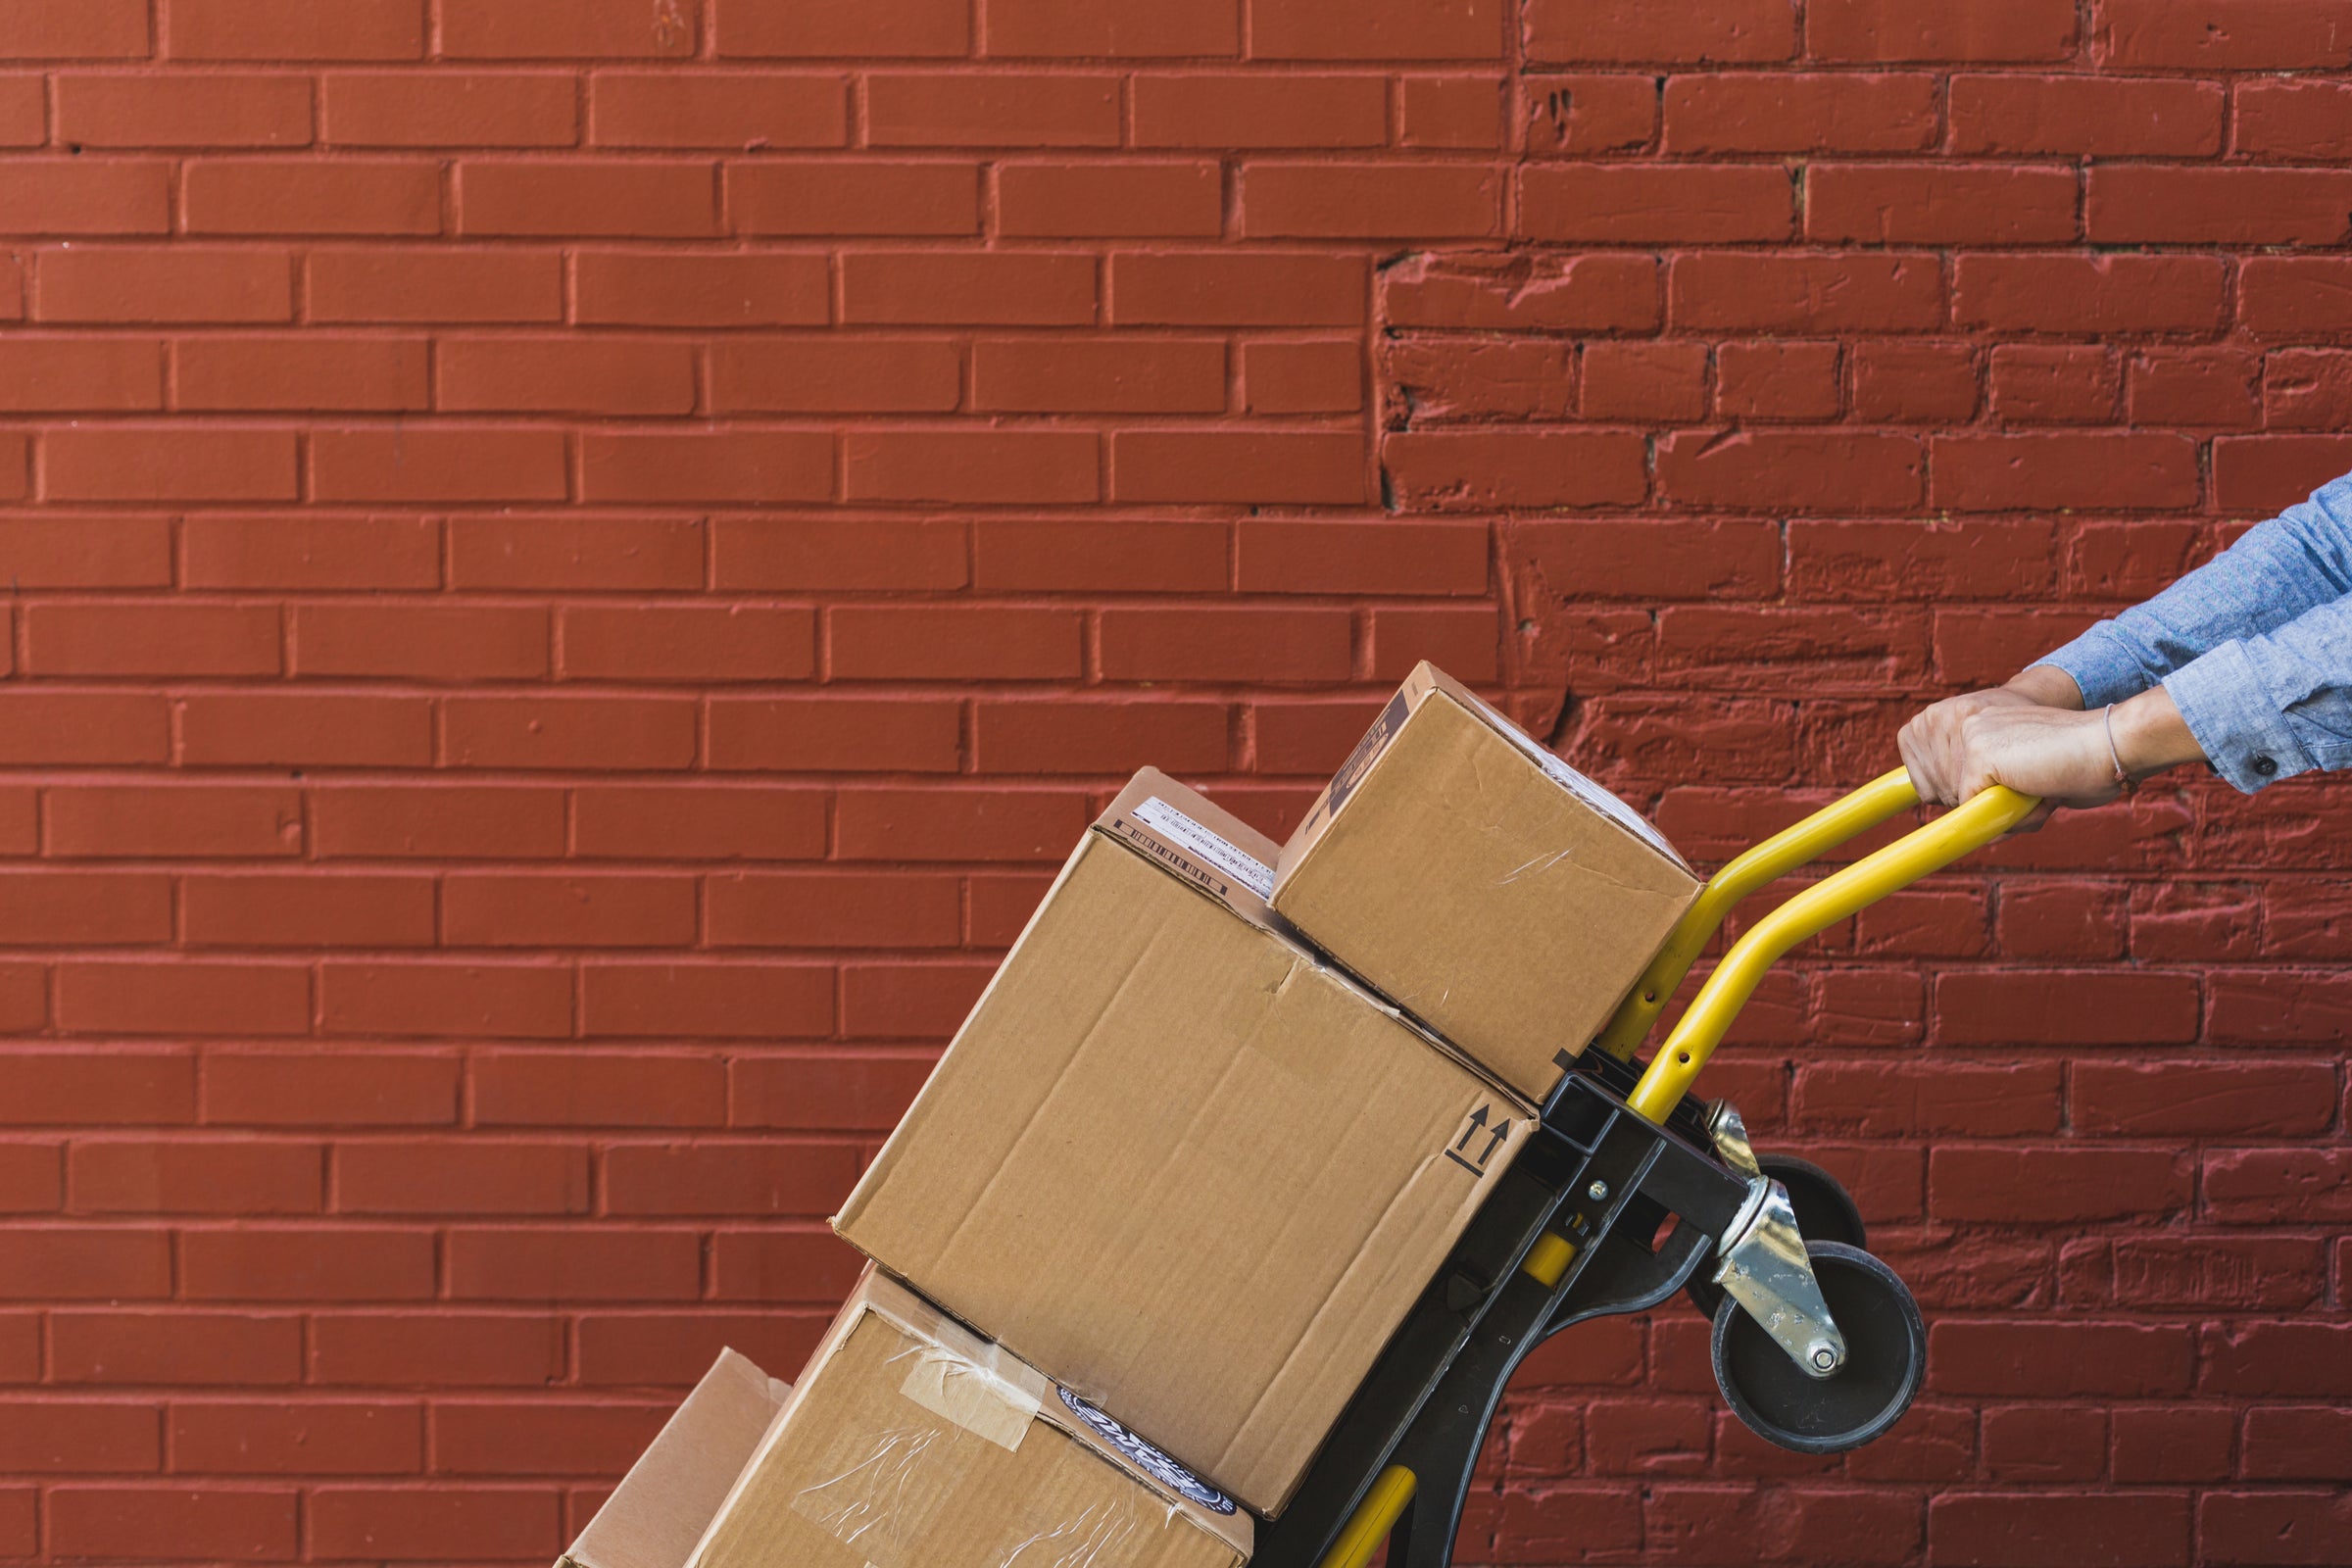 Pazls Möbel werden schnell geliefert: drei Pakete auf Lieferwagen